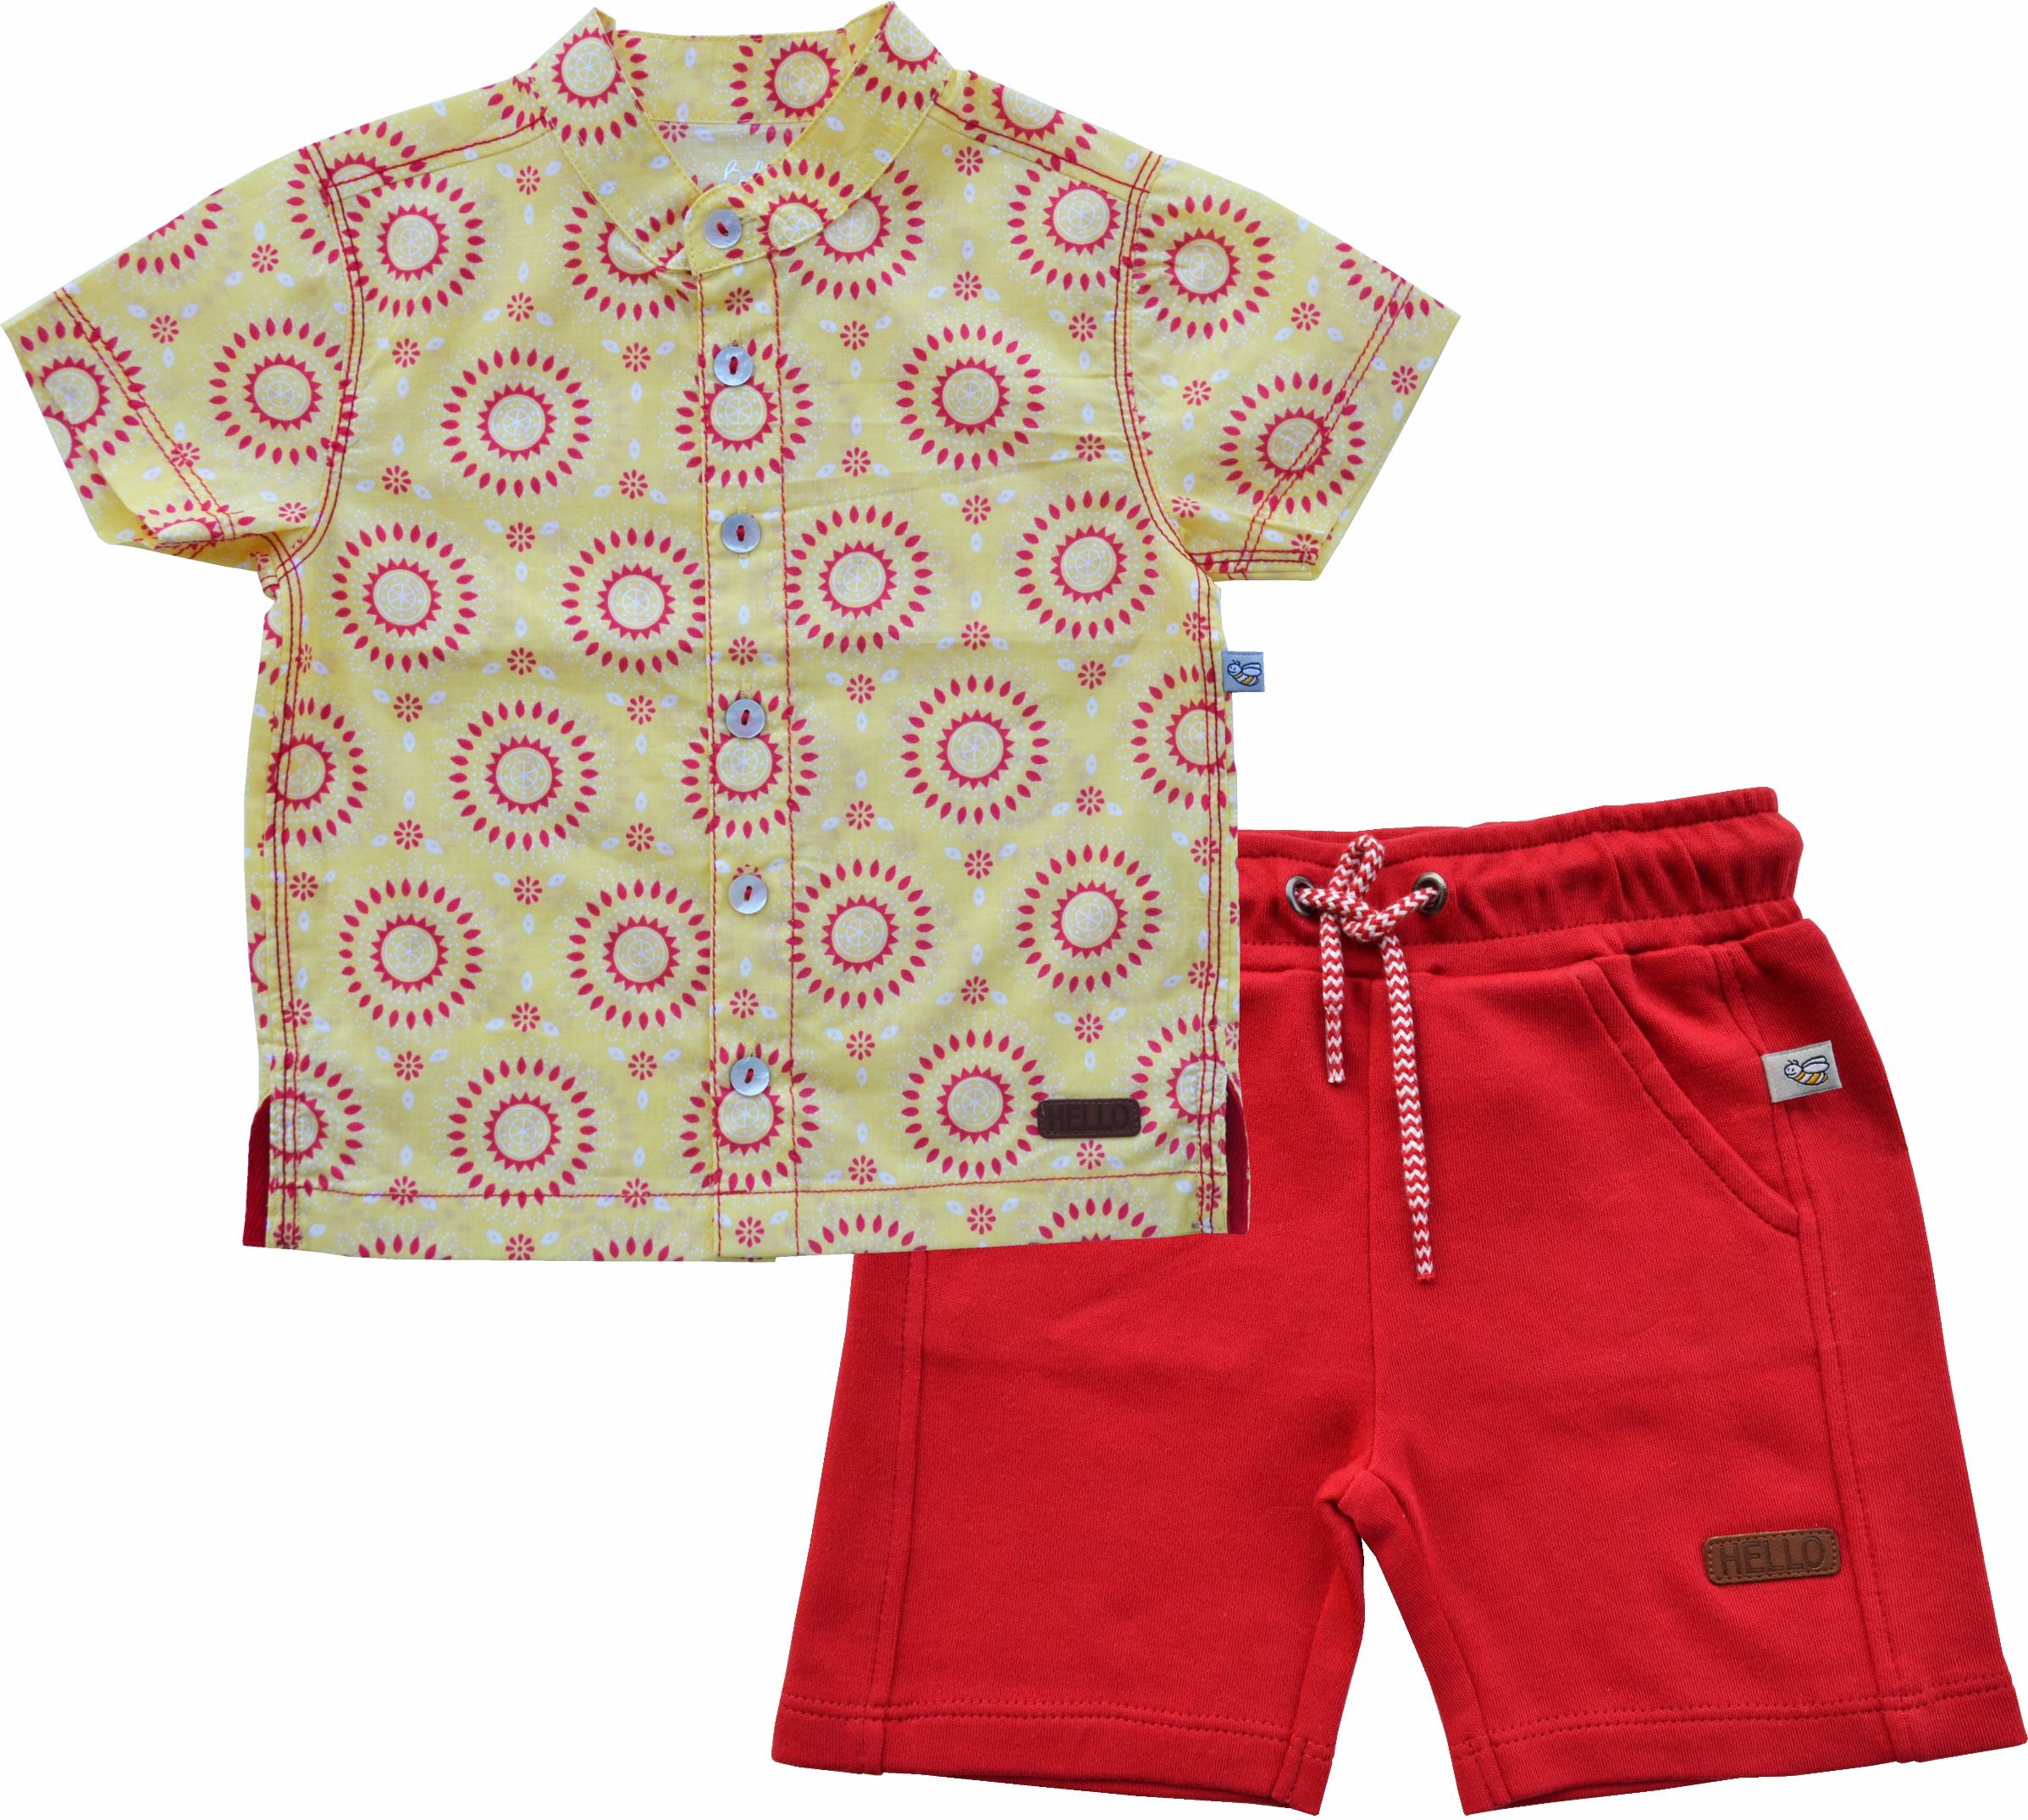 Allover Circles Print Yellow Short Sleeves Kurta Shirt+Red Shorts Set(100% Cotton)